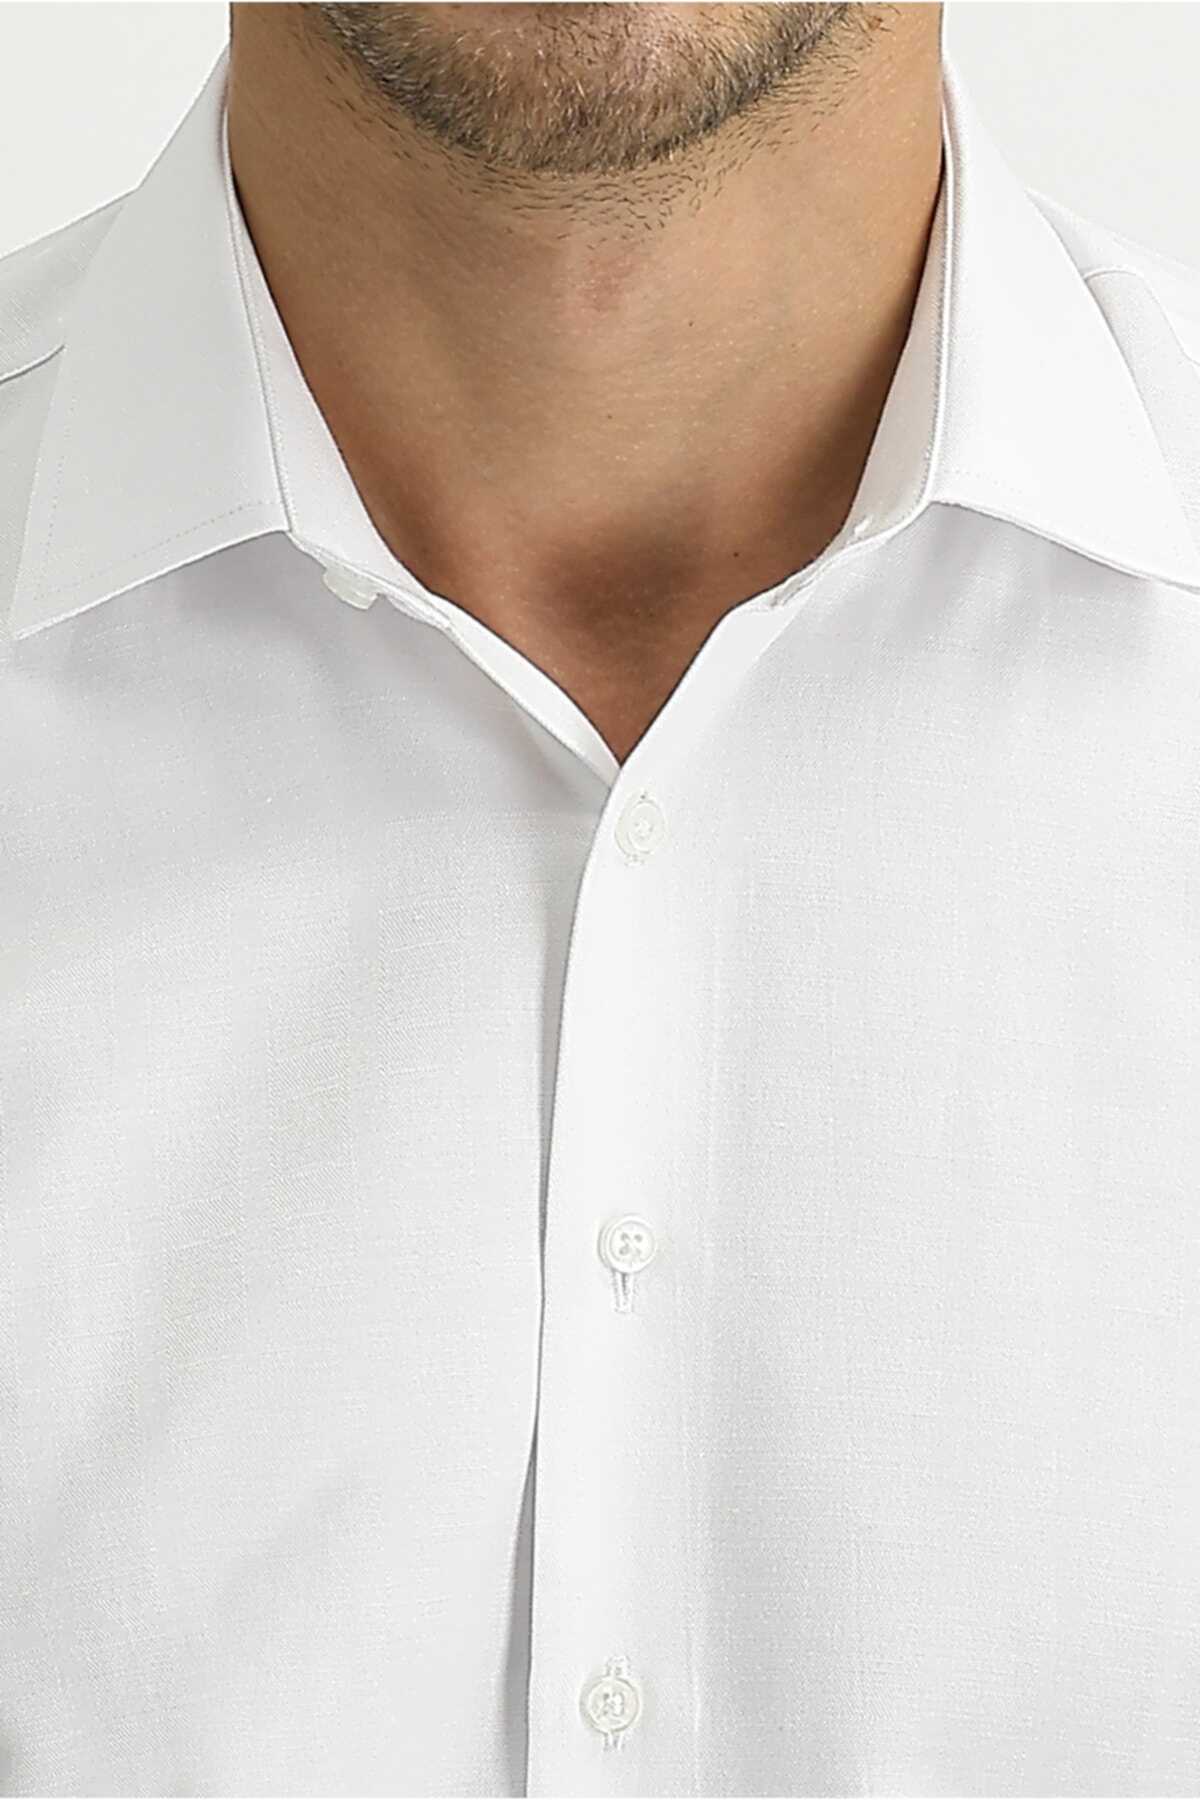 پیراهن مردانه سفید برند Kiğılı